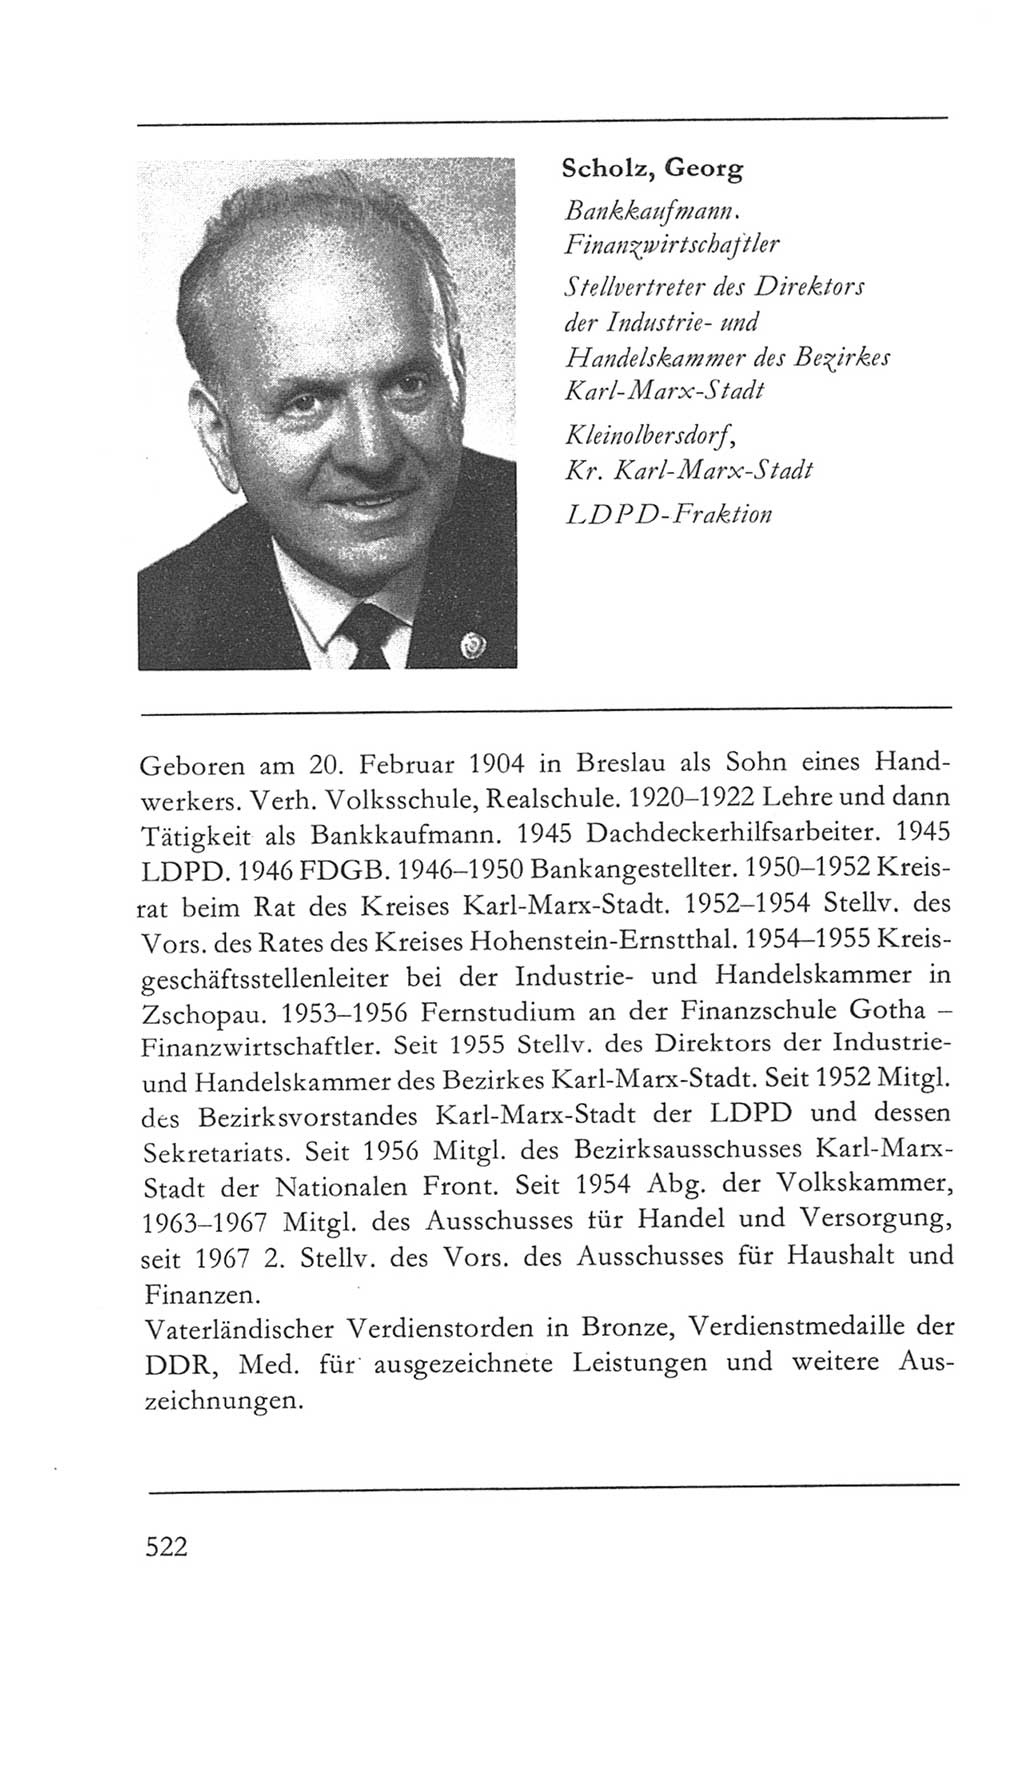 Volkskammer (VK) der Deutschen Demokratischen Republik (DDR) 5. Wahlperiode 1967-1971, Seite 522 (VK. DDR 5. WP. 1967-1971, S. 522)